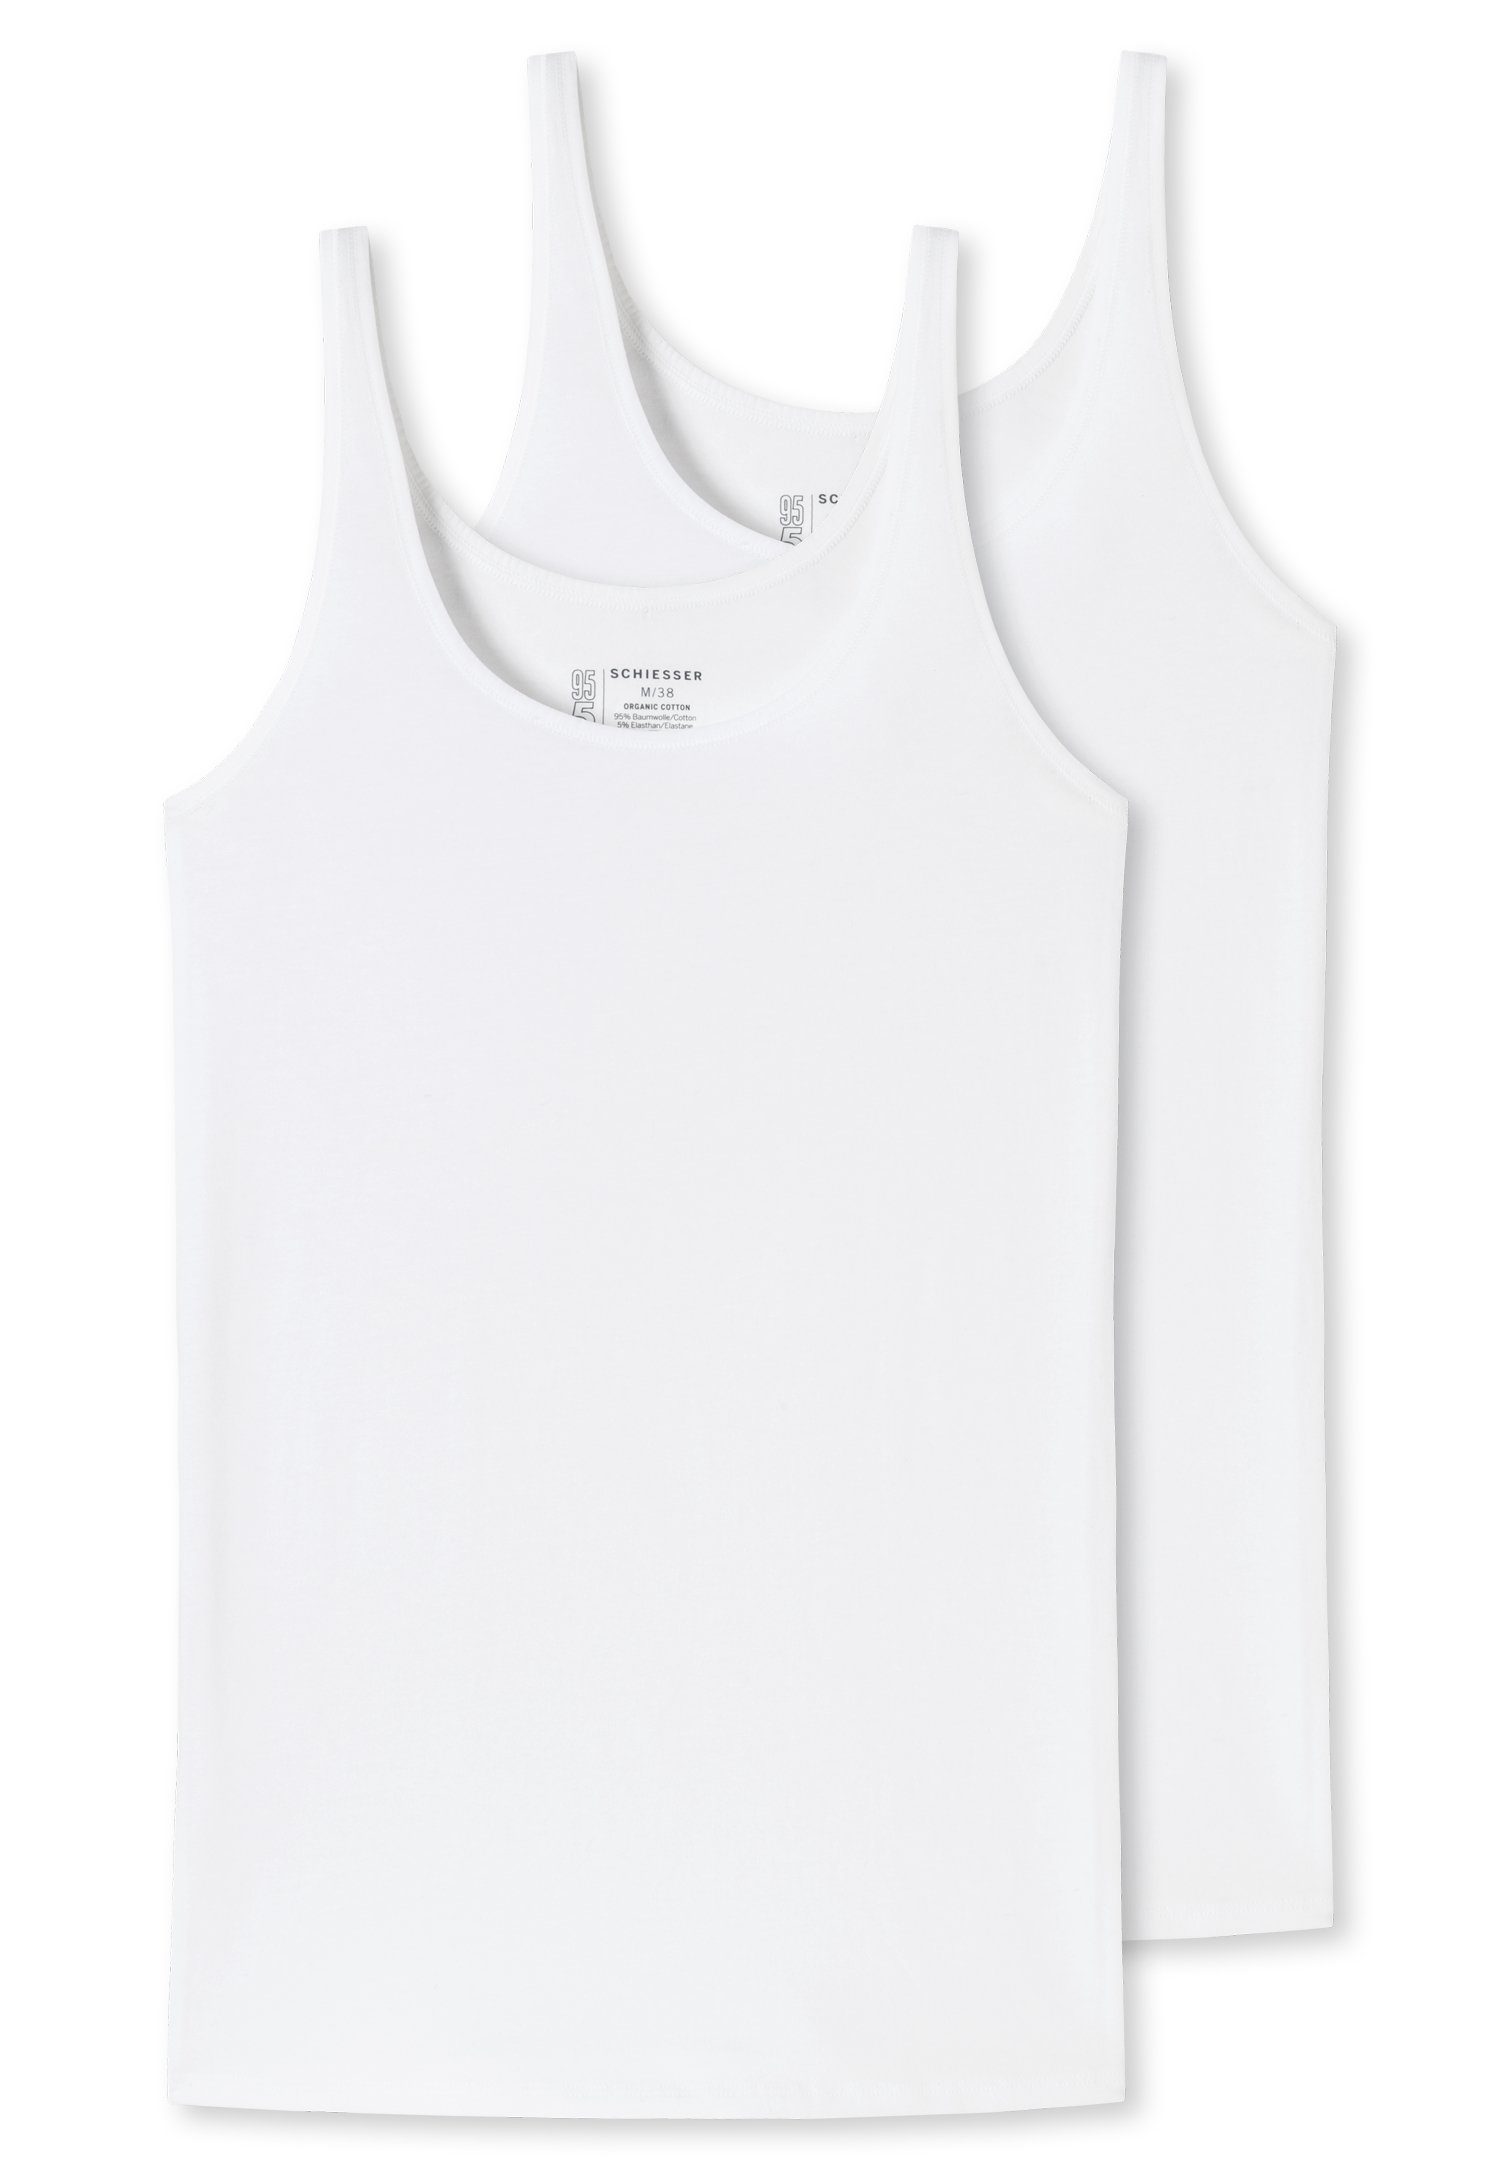 Schiesser Unterhemd (2er-Pack) mit elastischer Single-Jersey-Qualität 2xweiß